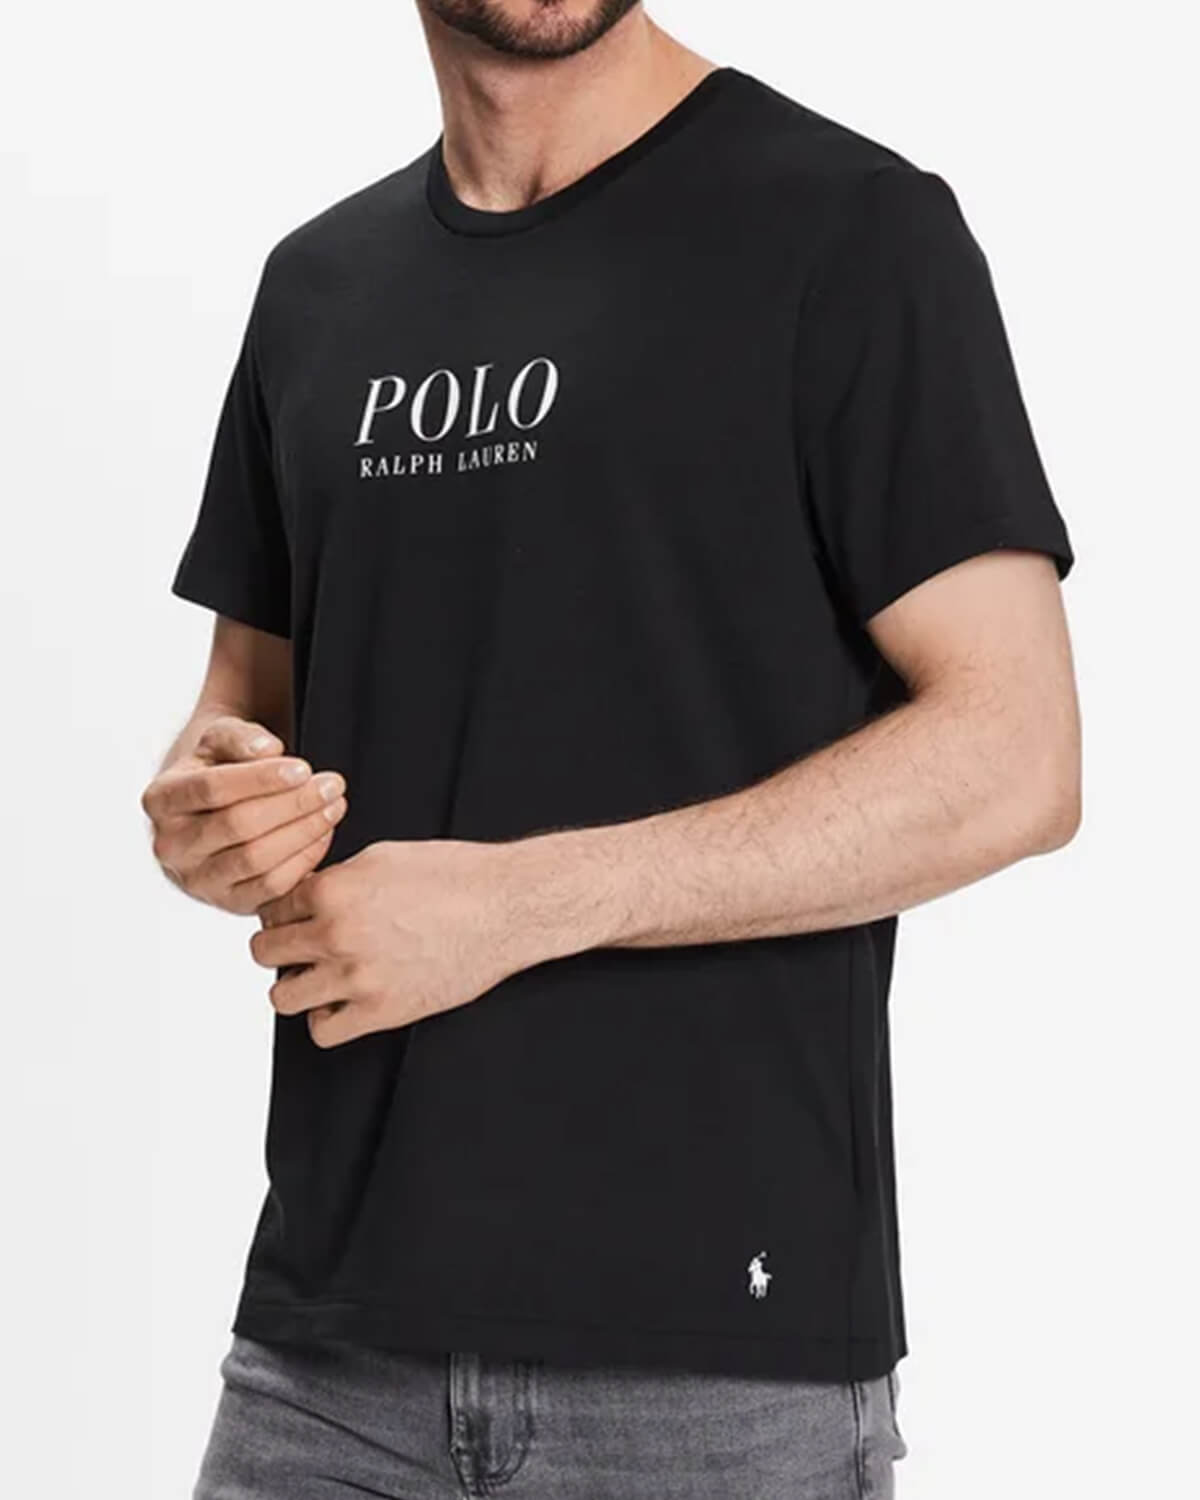 Ανδρική Κοντομάνικη Μπλούζα Ύπνου Polo Ralph Lauren - S/S Crew